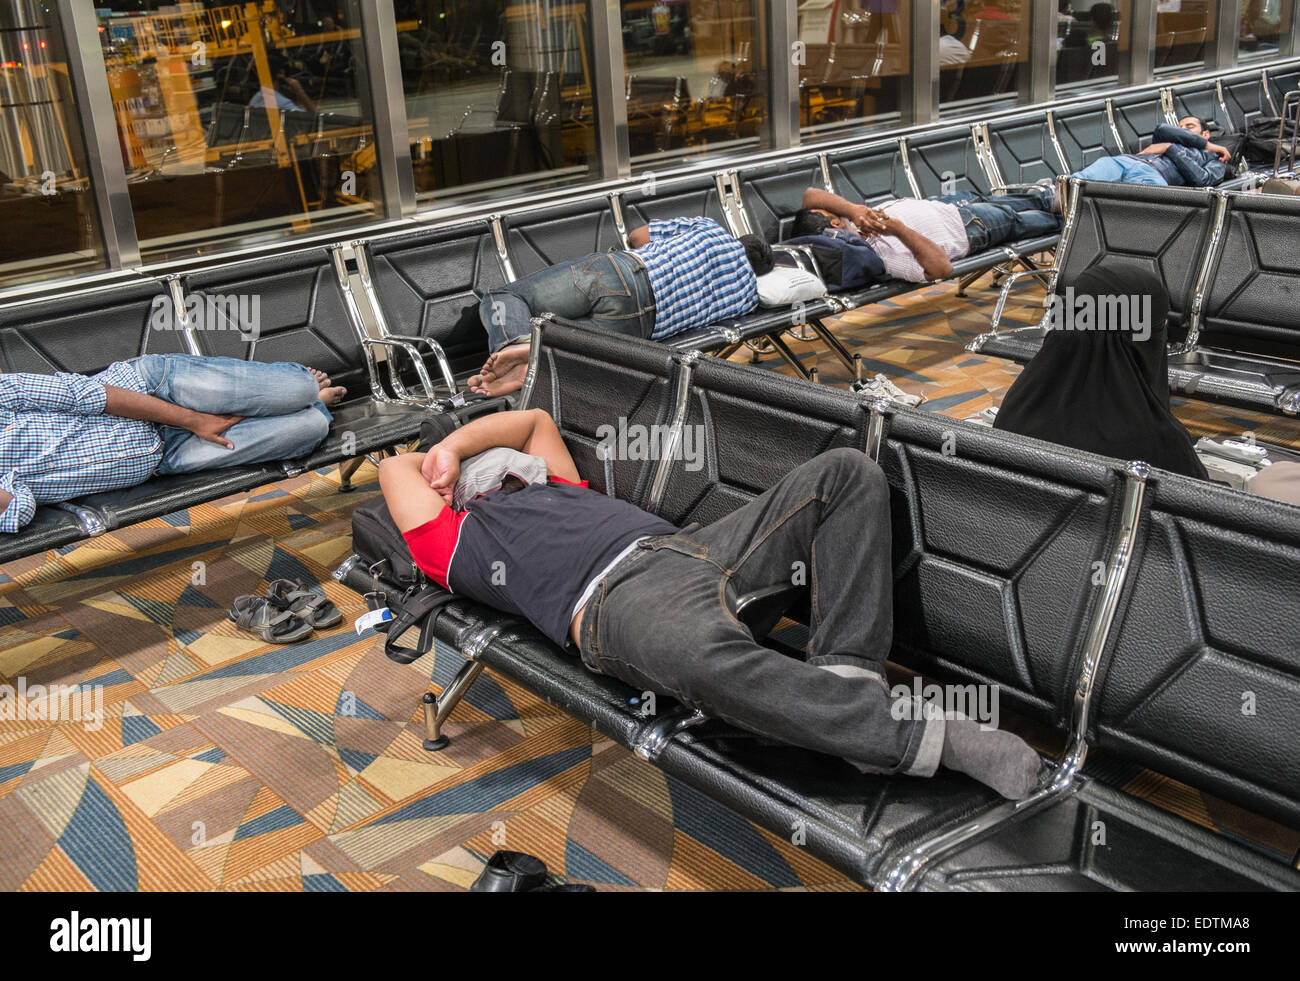 Dormir,dormir,privé,privation,somnoler,reposant,rattraper un peu de sommeil,au départ,l'Aéroport International de Bahreïn, Bahreïn, Moyen-Orient Banque D'Images